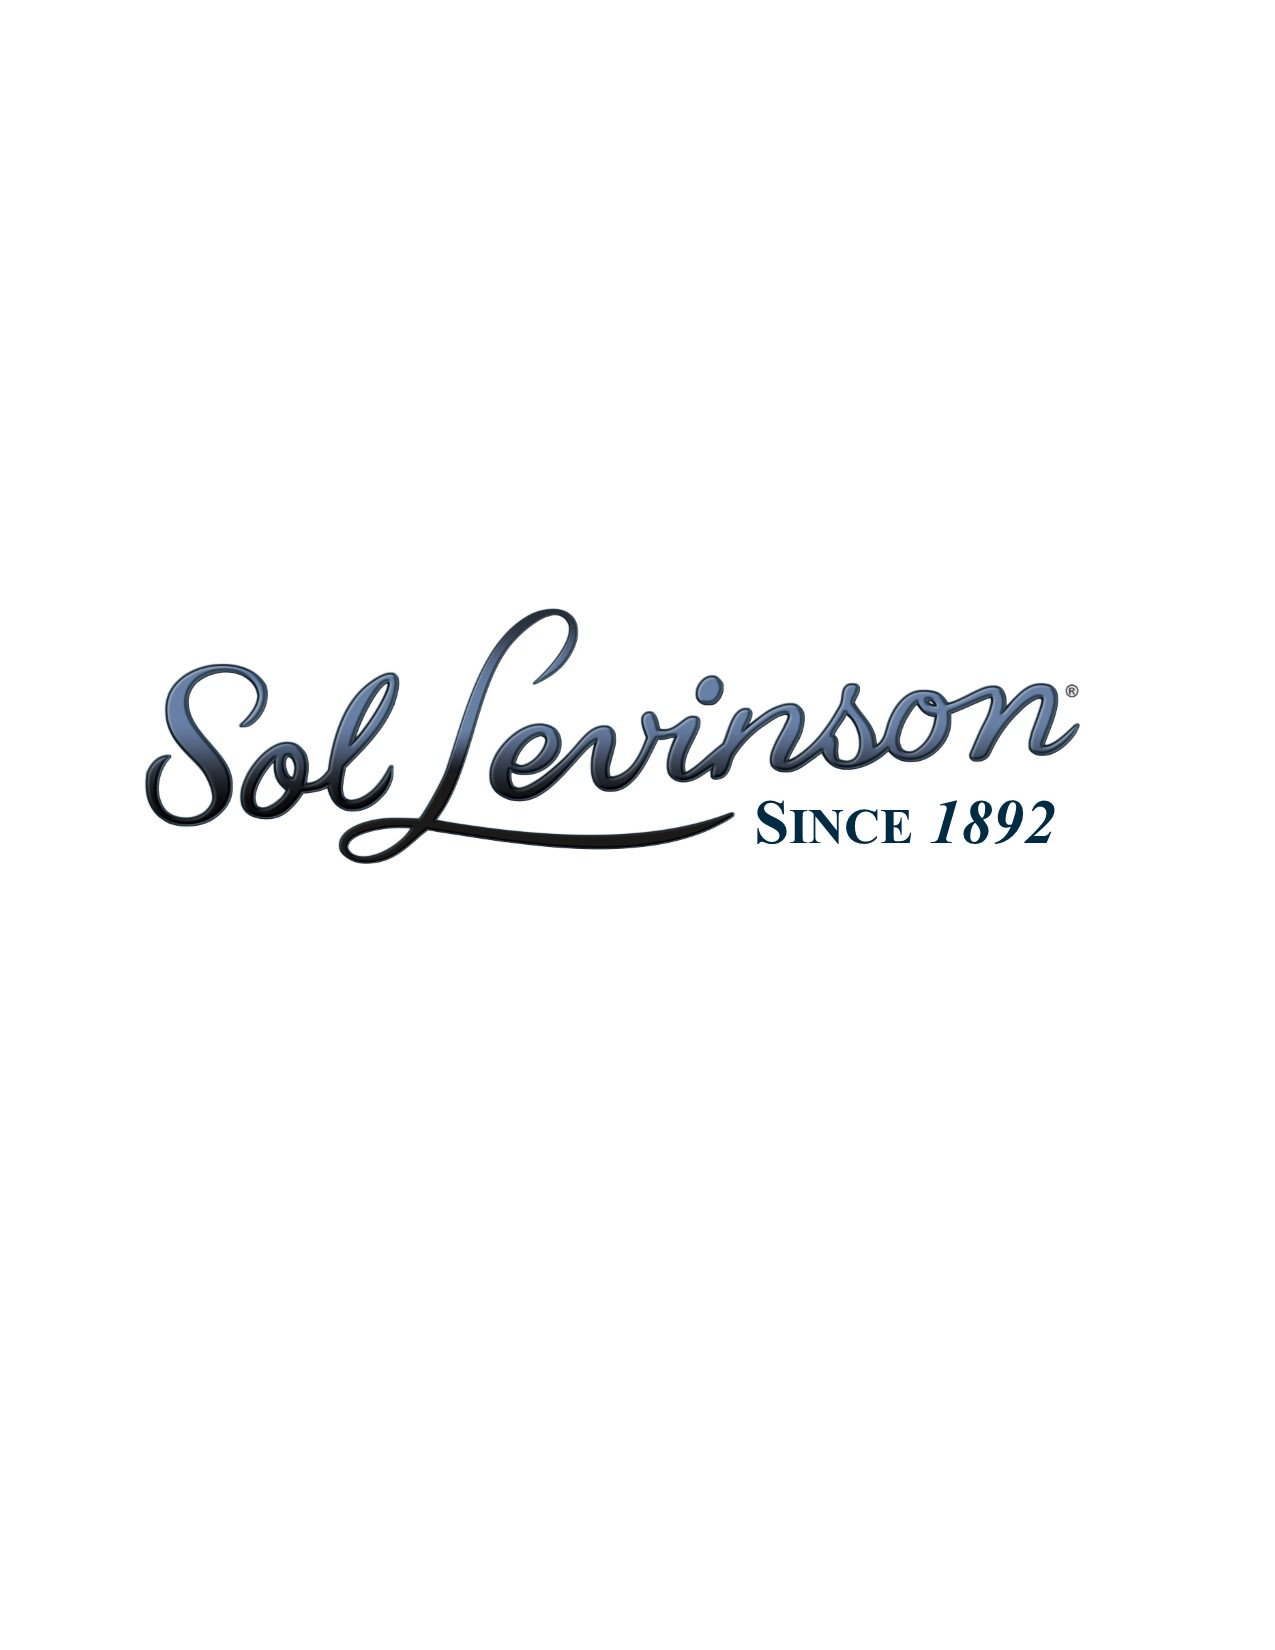 Sol Levinson & Bros. Inc. logo